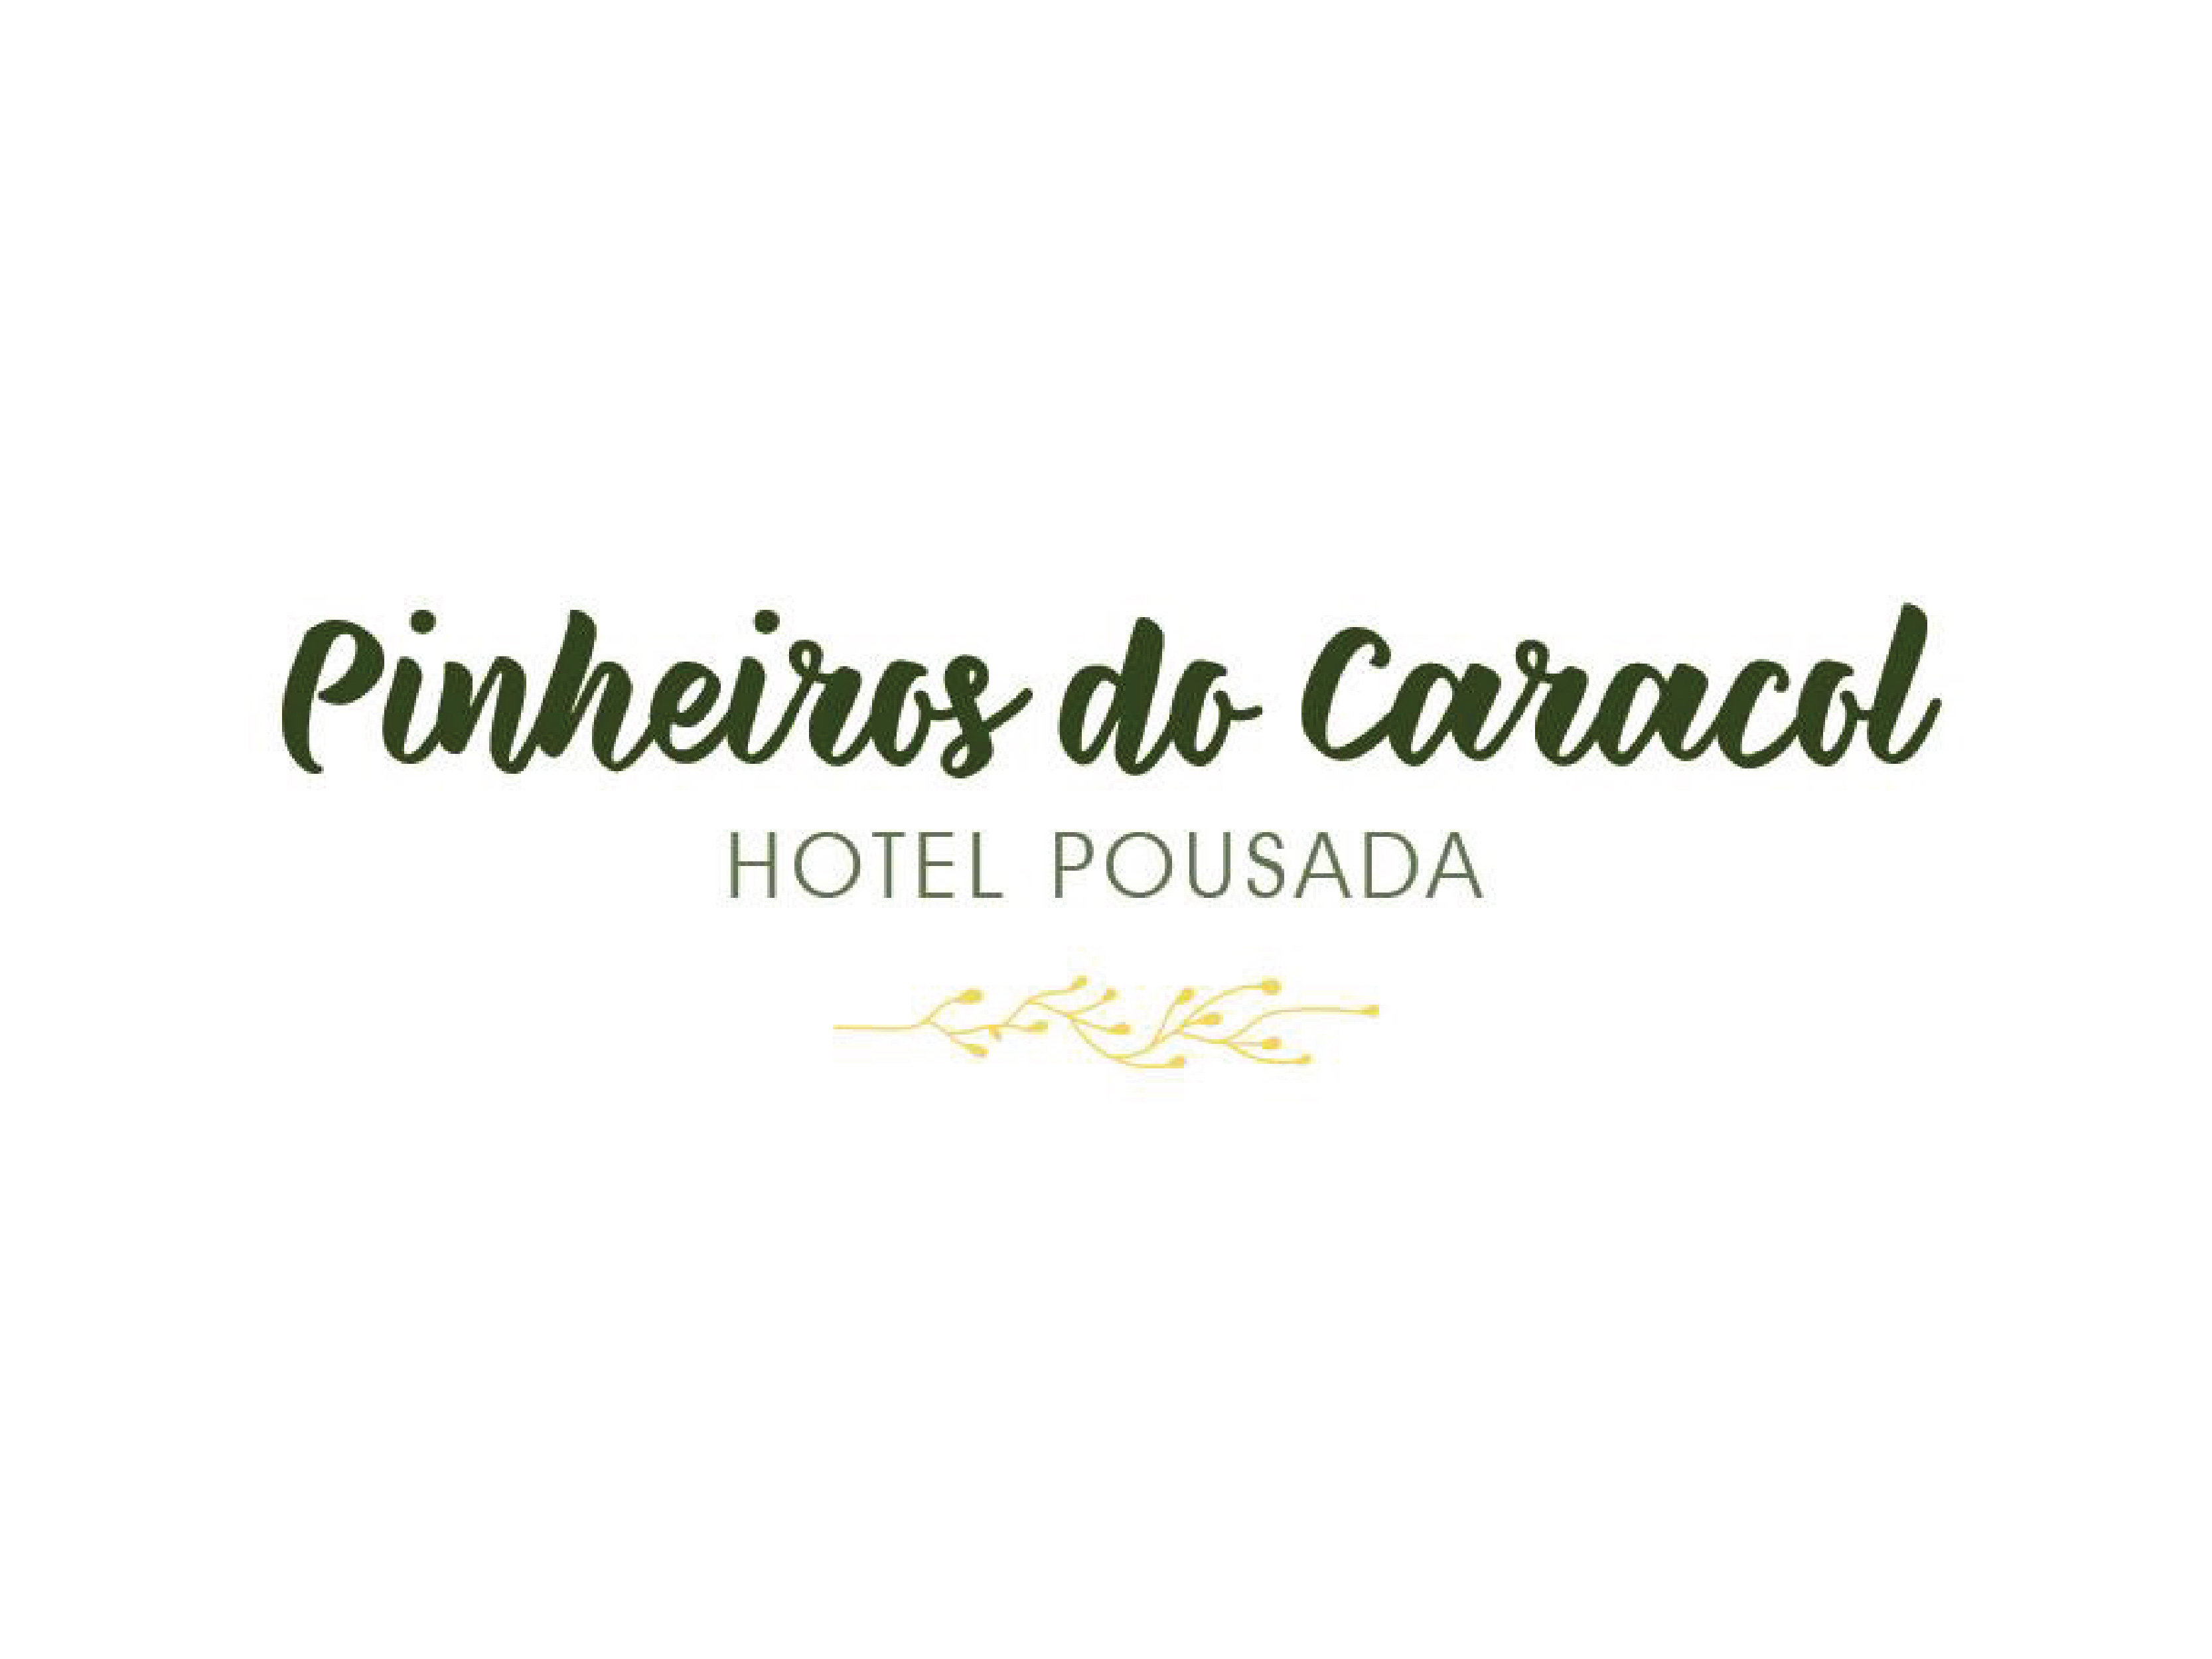 Hotel Pousada Pinheiros do Caracol